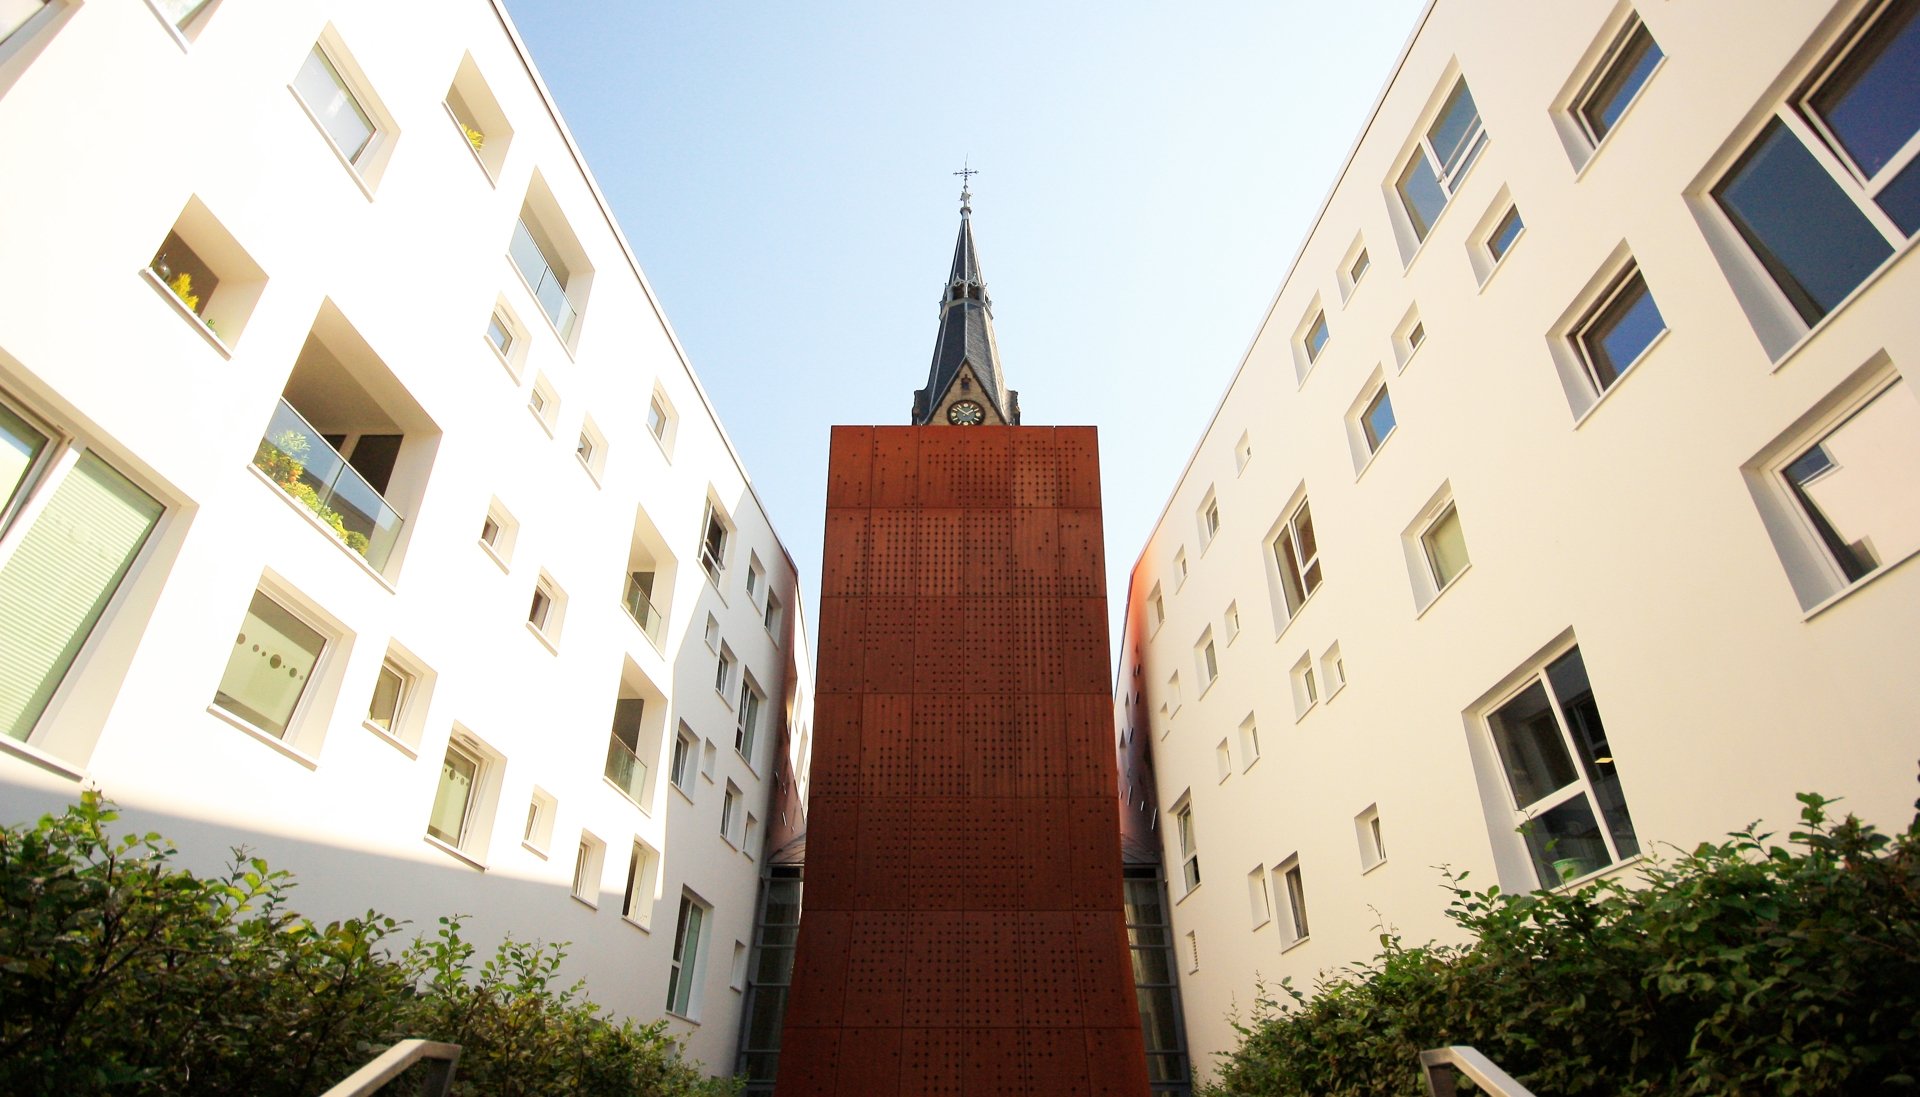 Dr. OEBELS + partner - Immobilienangebot - Köln - Wohnung - Christuskirche 'Mitten im Leben' - 4-Zimmer-Wohnung /
Erstbezug